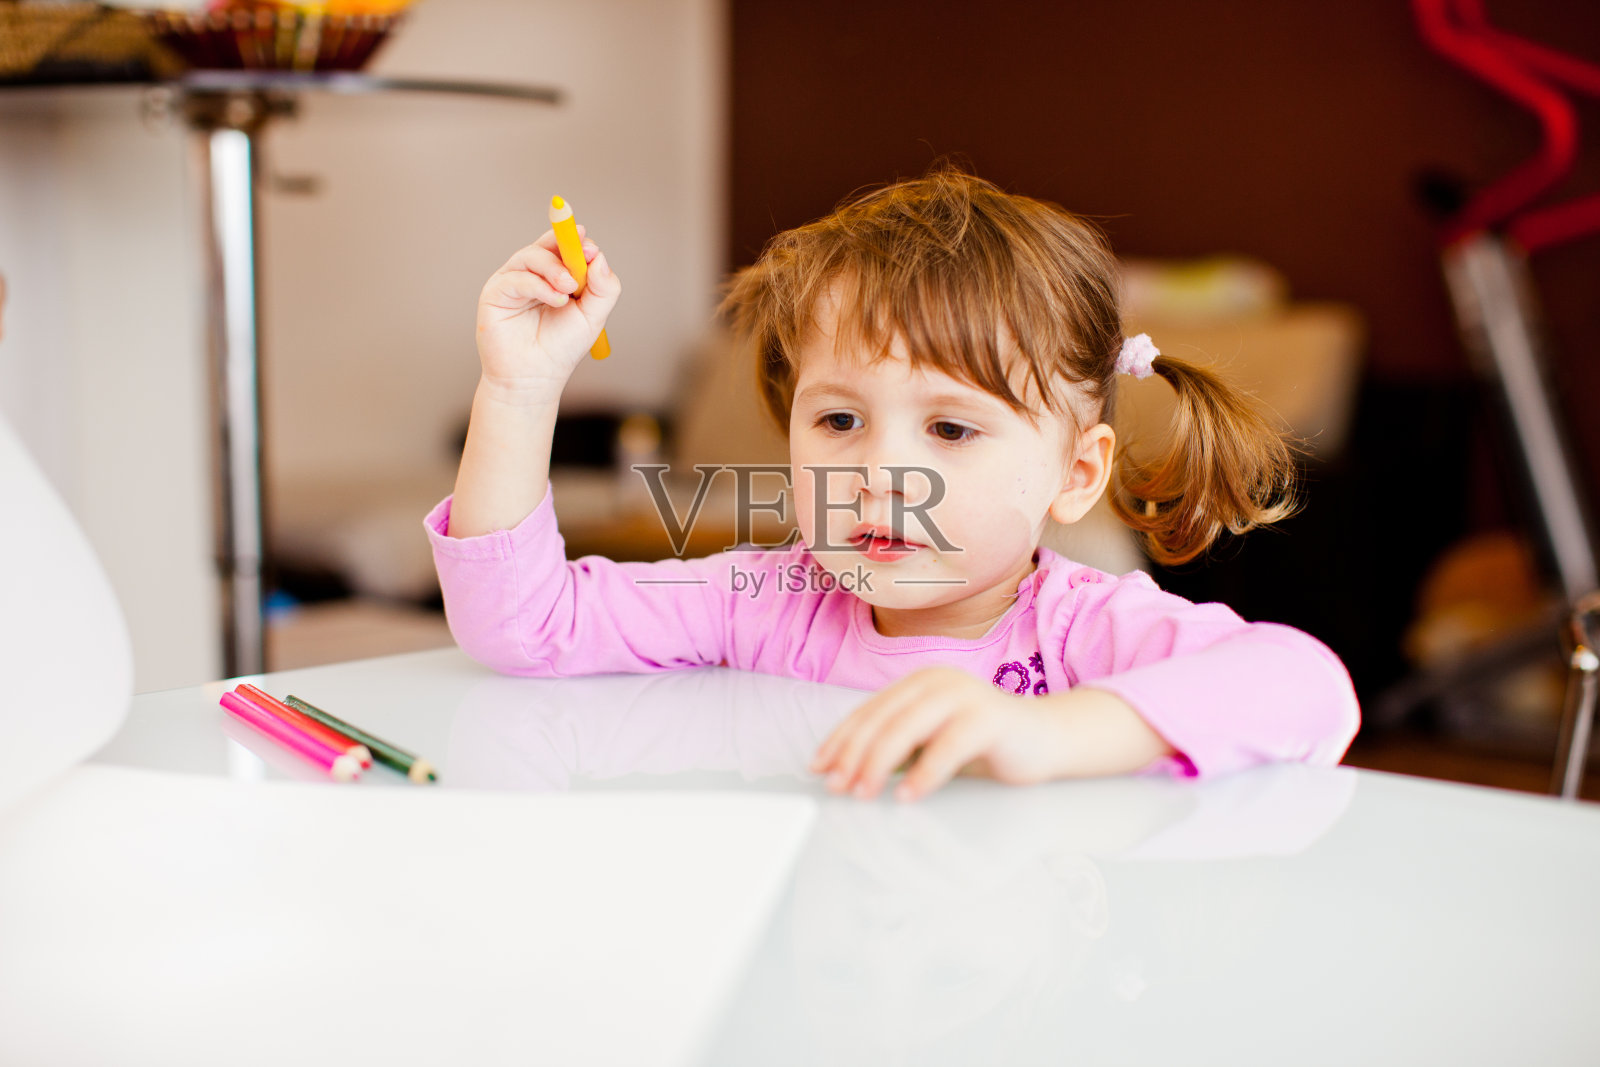 可爱的小女孩坐在桌子上拿着彩色铅笔准备在空白纸上画画-库存照片照片摄影图片